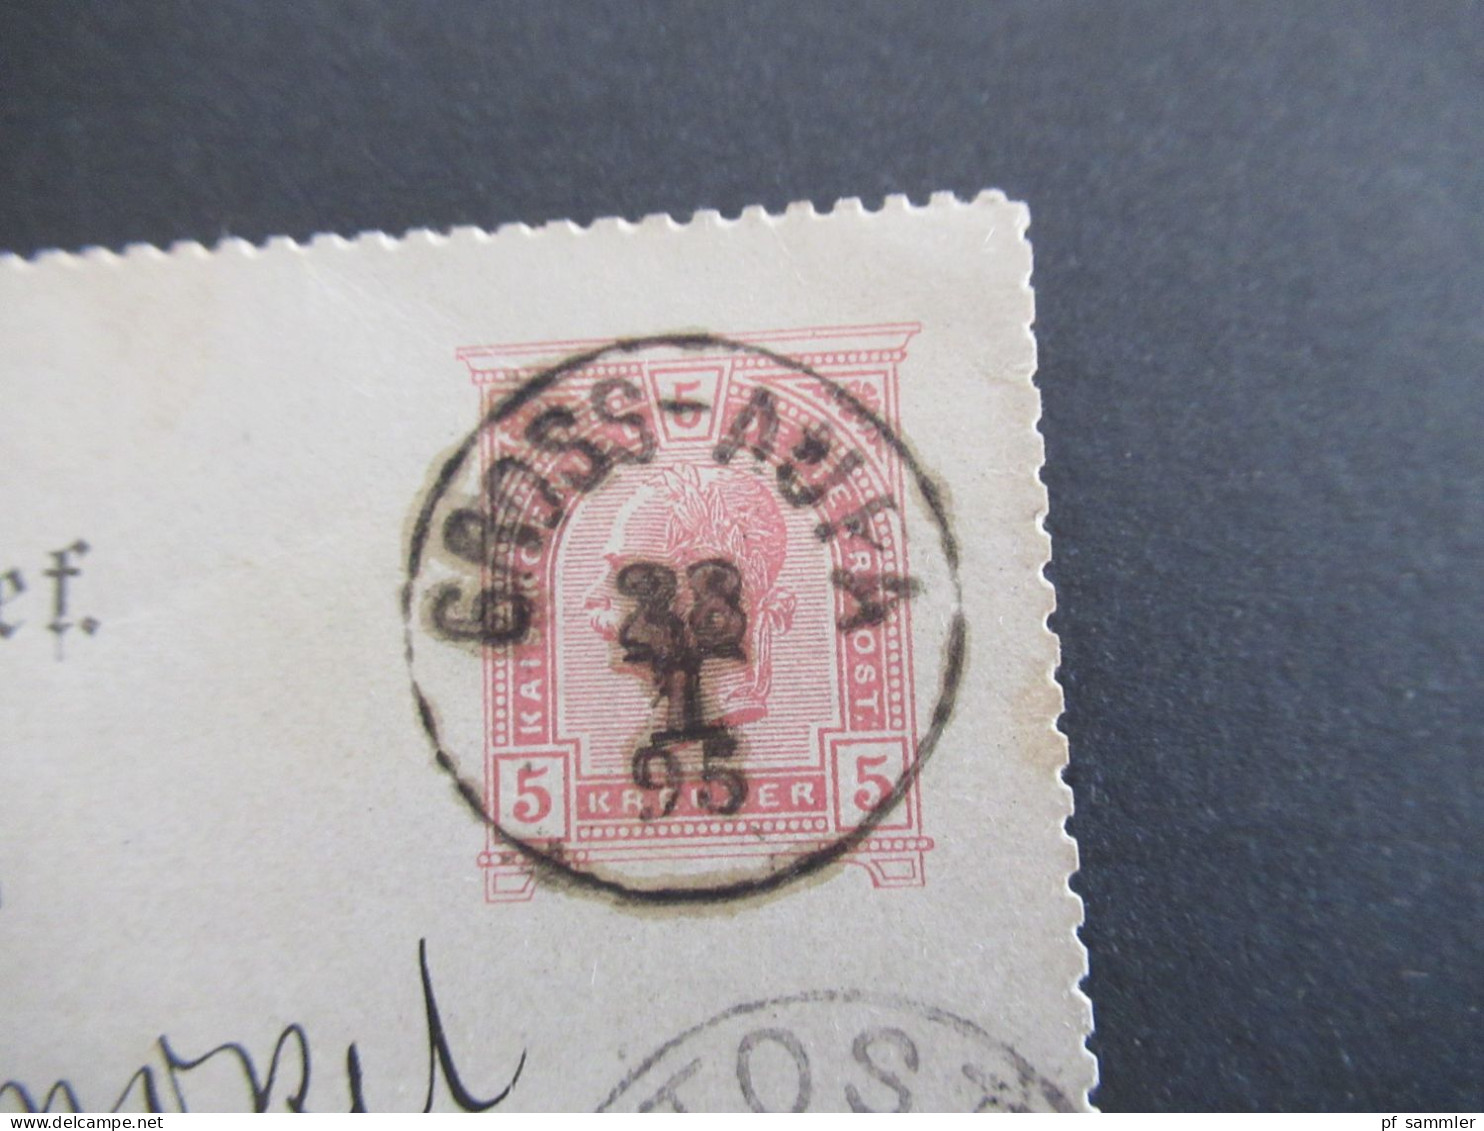 1895 Österreich / Tschechien Riesengebirge Kartenbrief K1 Gross Aupa (bei Trautenau) Und Ank. Stempel K1 Tost Schlesien - Cartes Postales